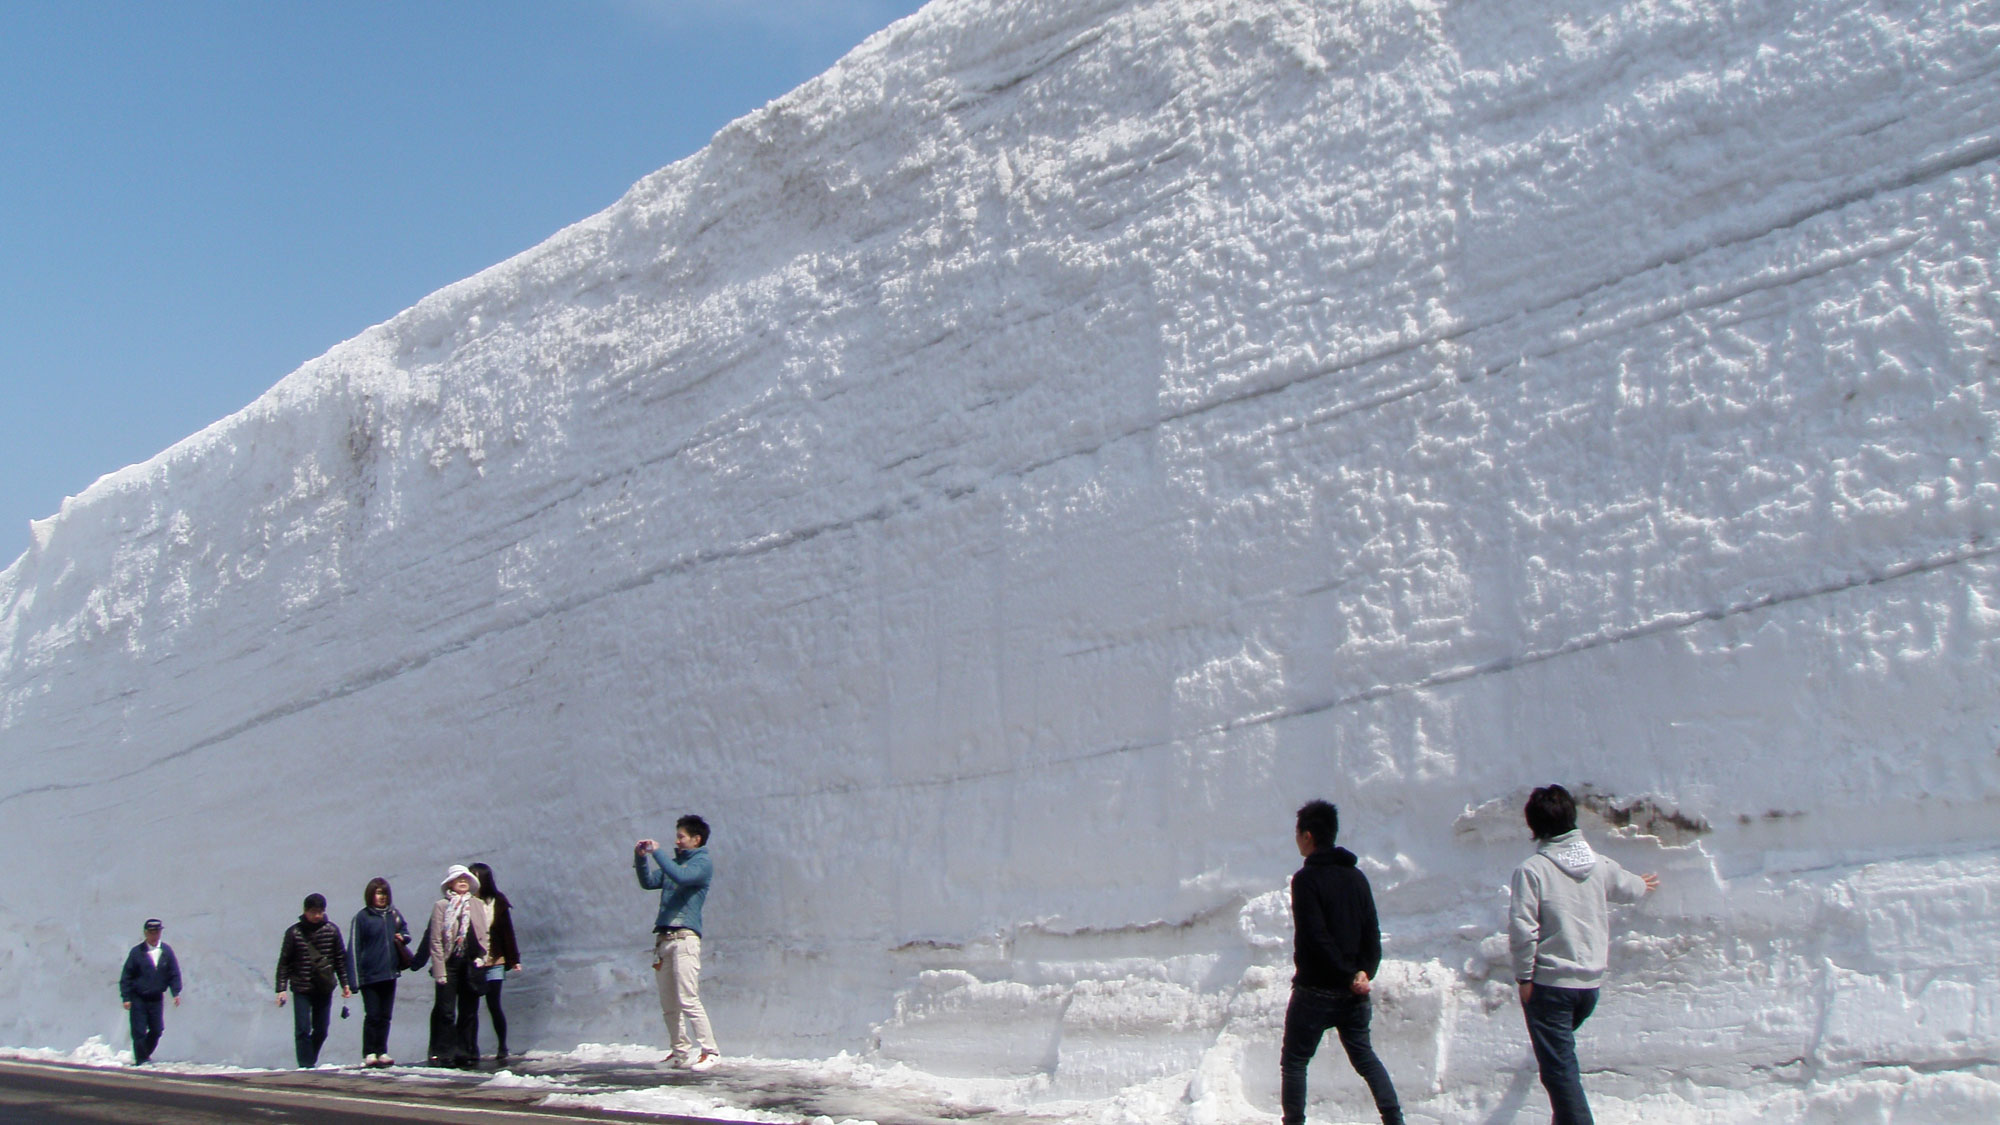 【雪の回廊】鮮やかな青空と真っ白な雪が生み出す美しい自然のコントラスト